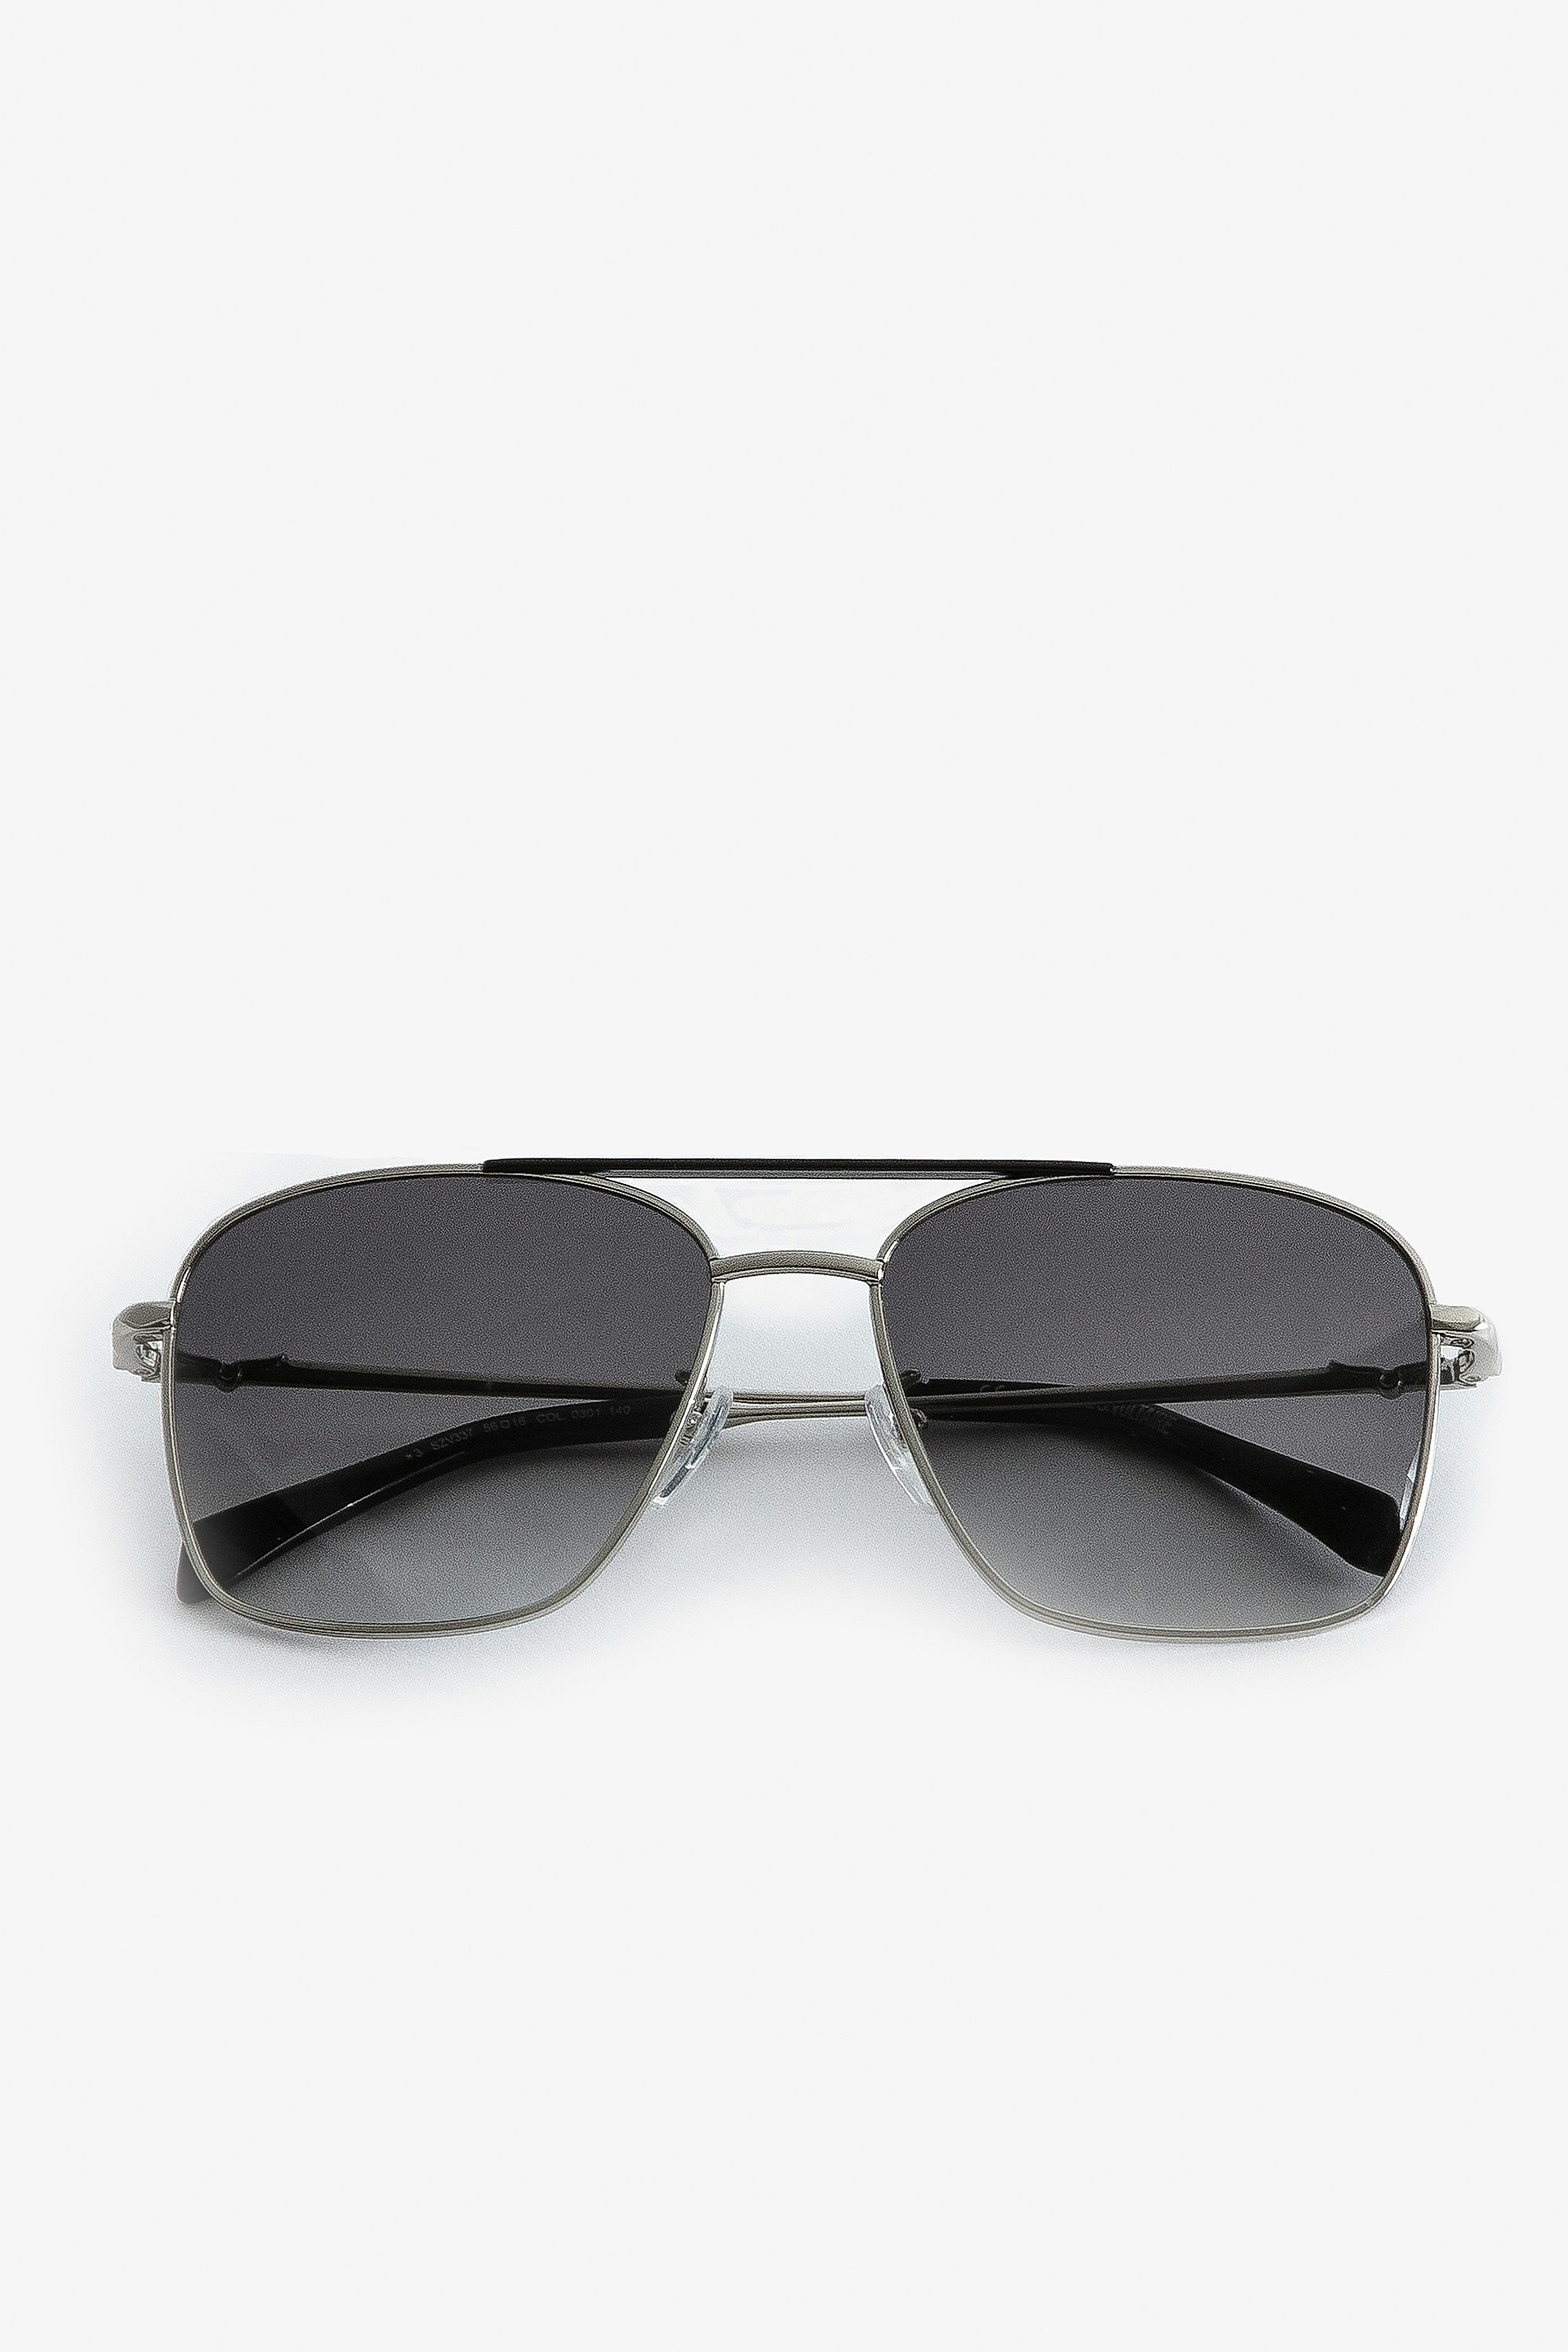 Sonnenbrille Wings Aviator Unisex-Pilotensonnenbrille aus schwarzem Metall mit Rauchgläsern.